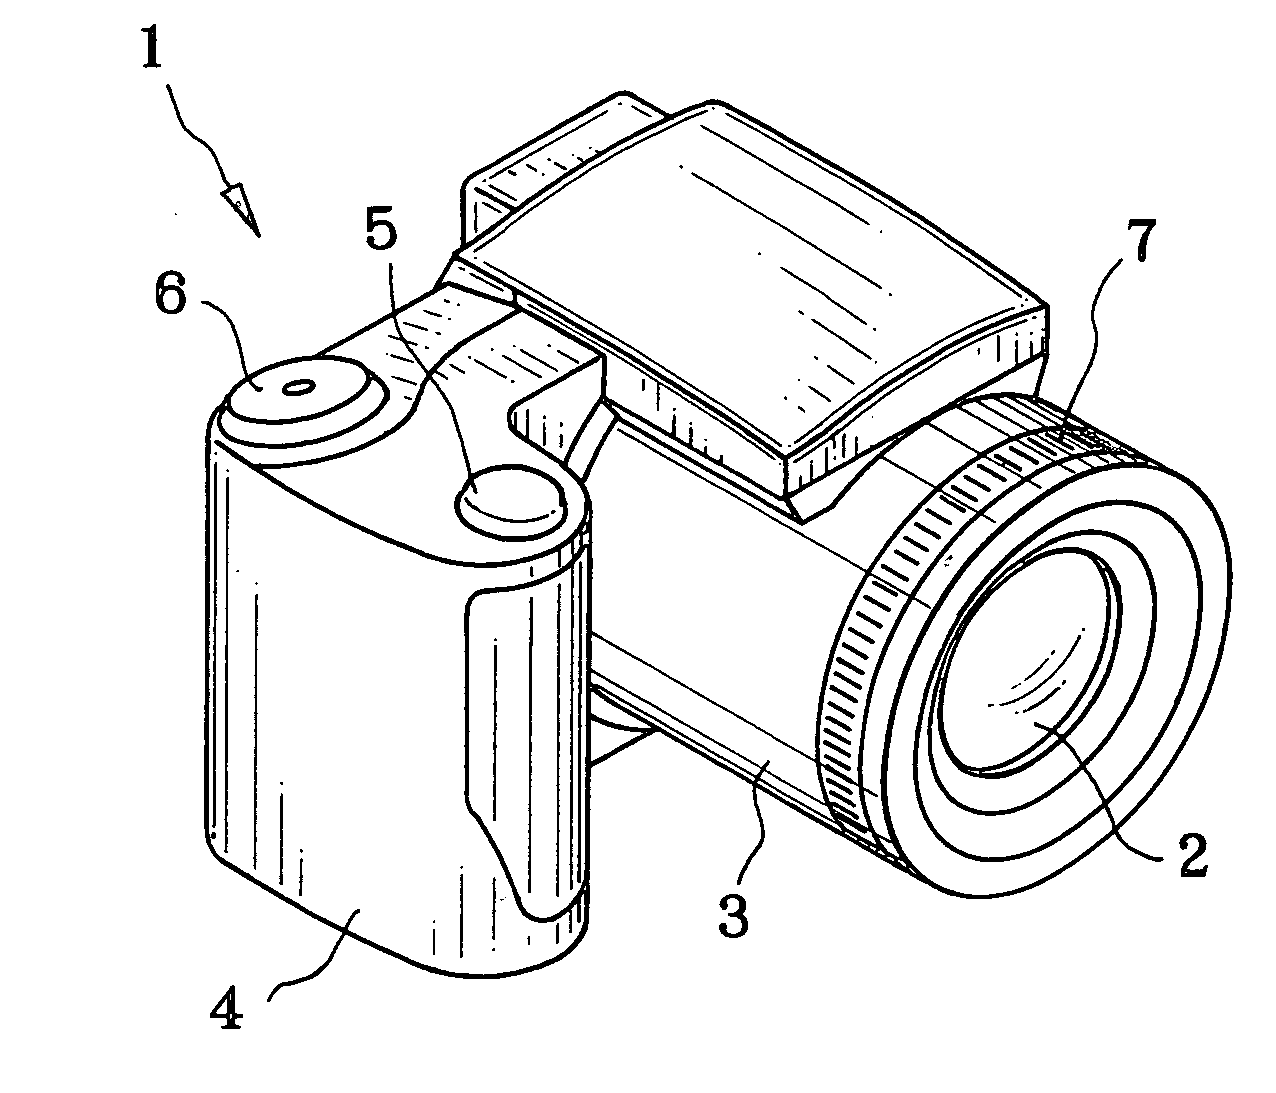 Manual focus device and autofocus camera